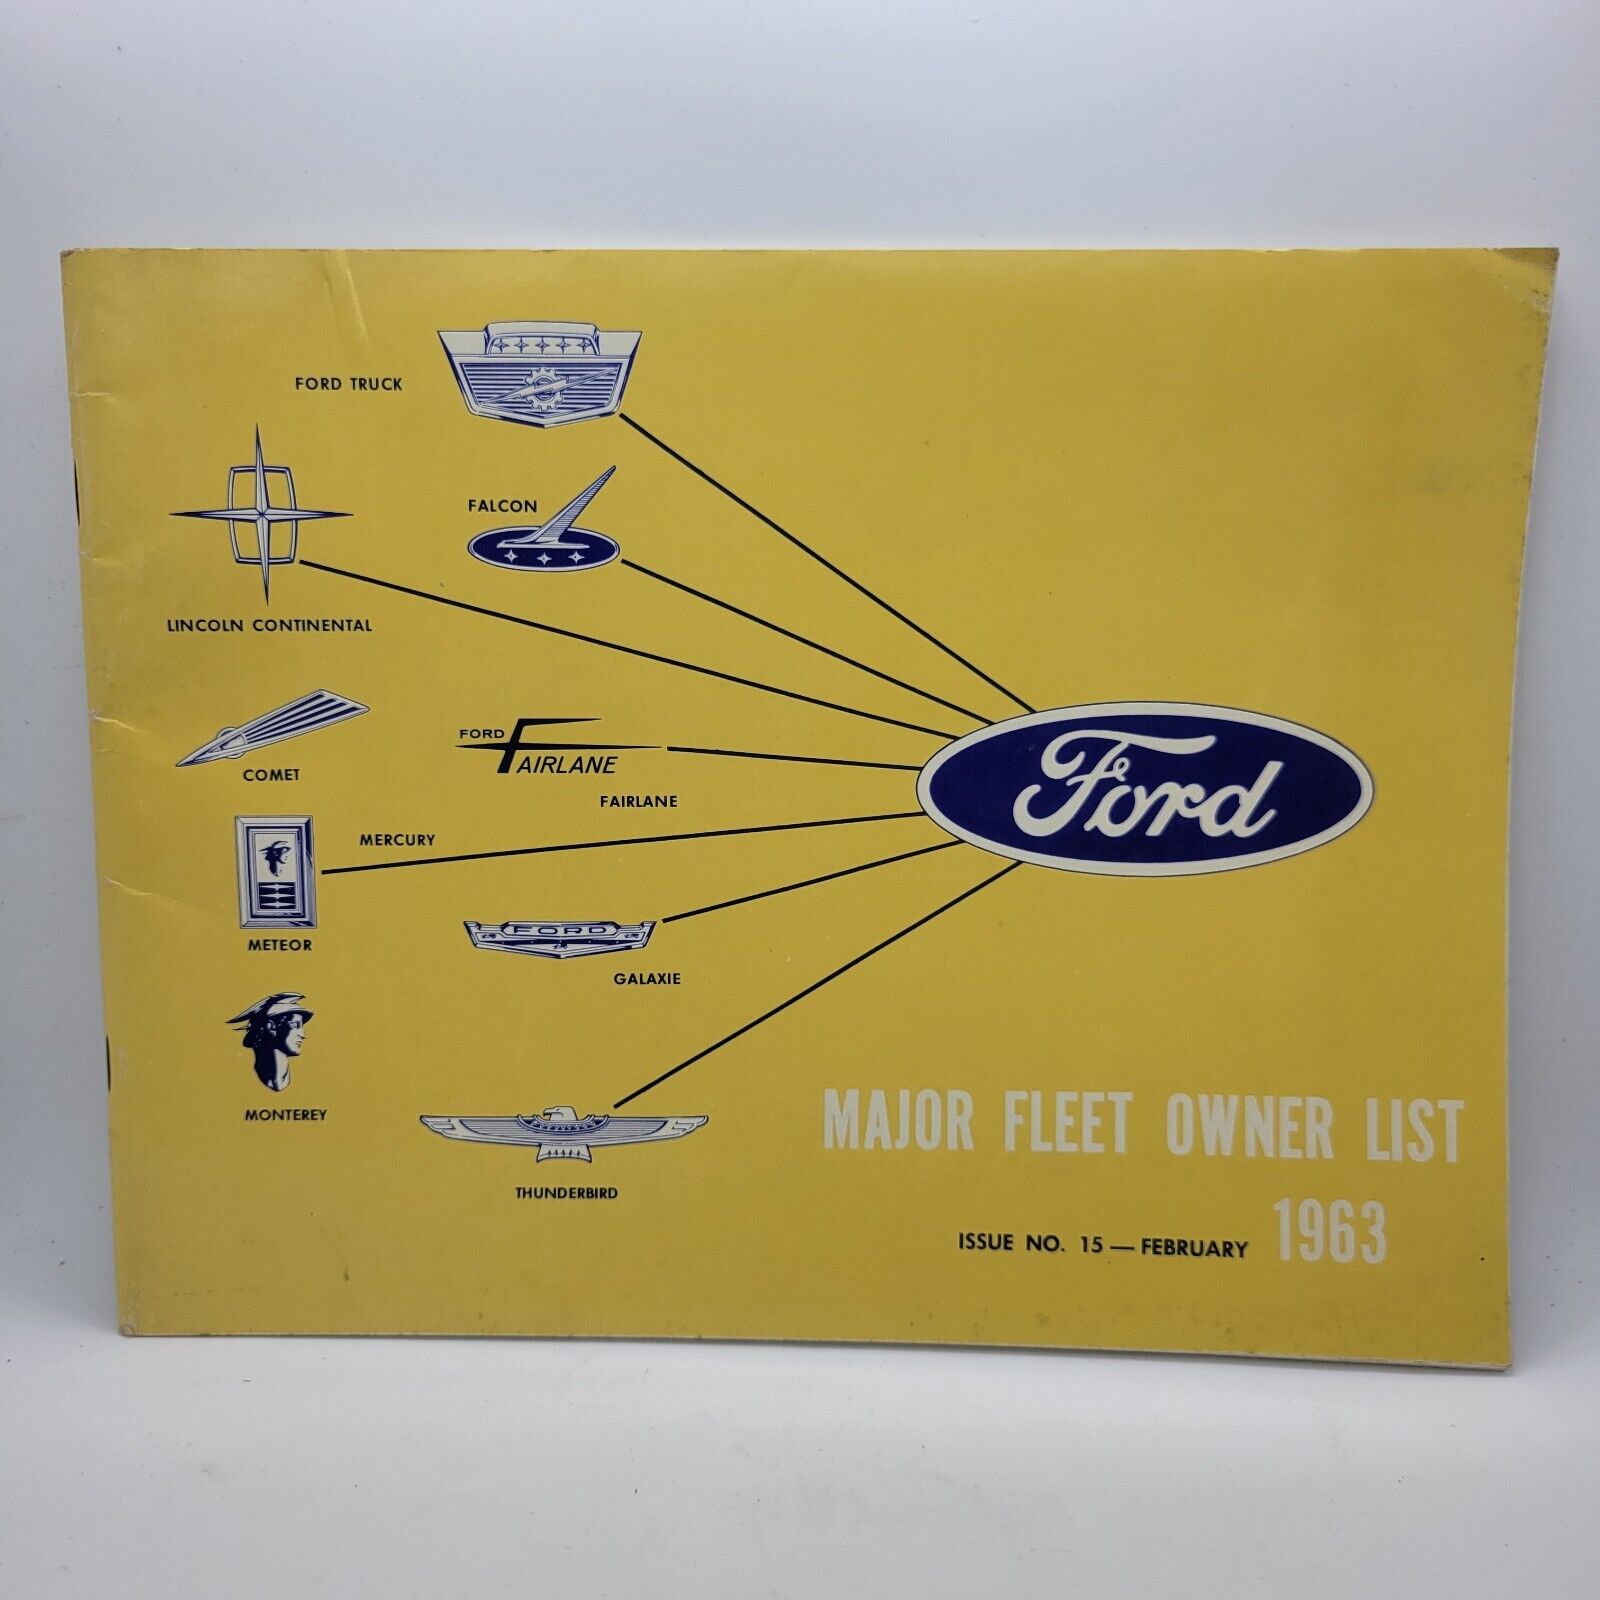 Rare Vintage 1963 Ford Major Fleet Owner List Dealer Booklet Ford Motor Company